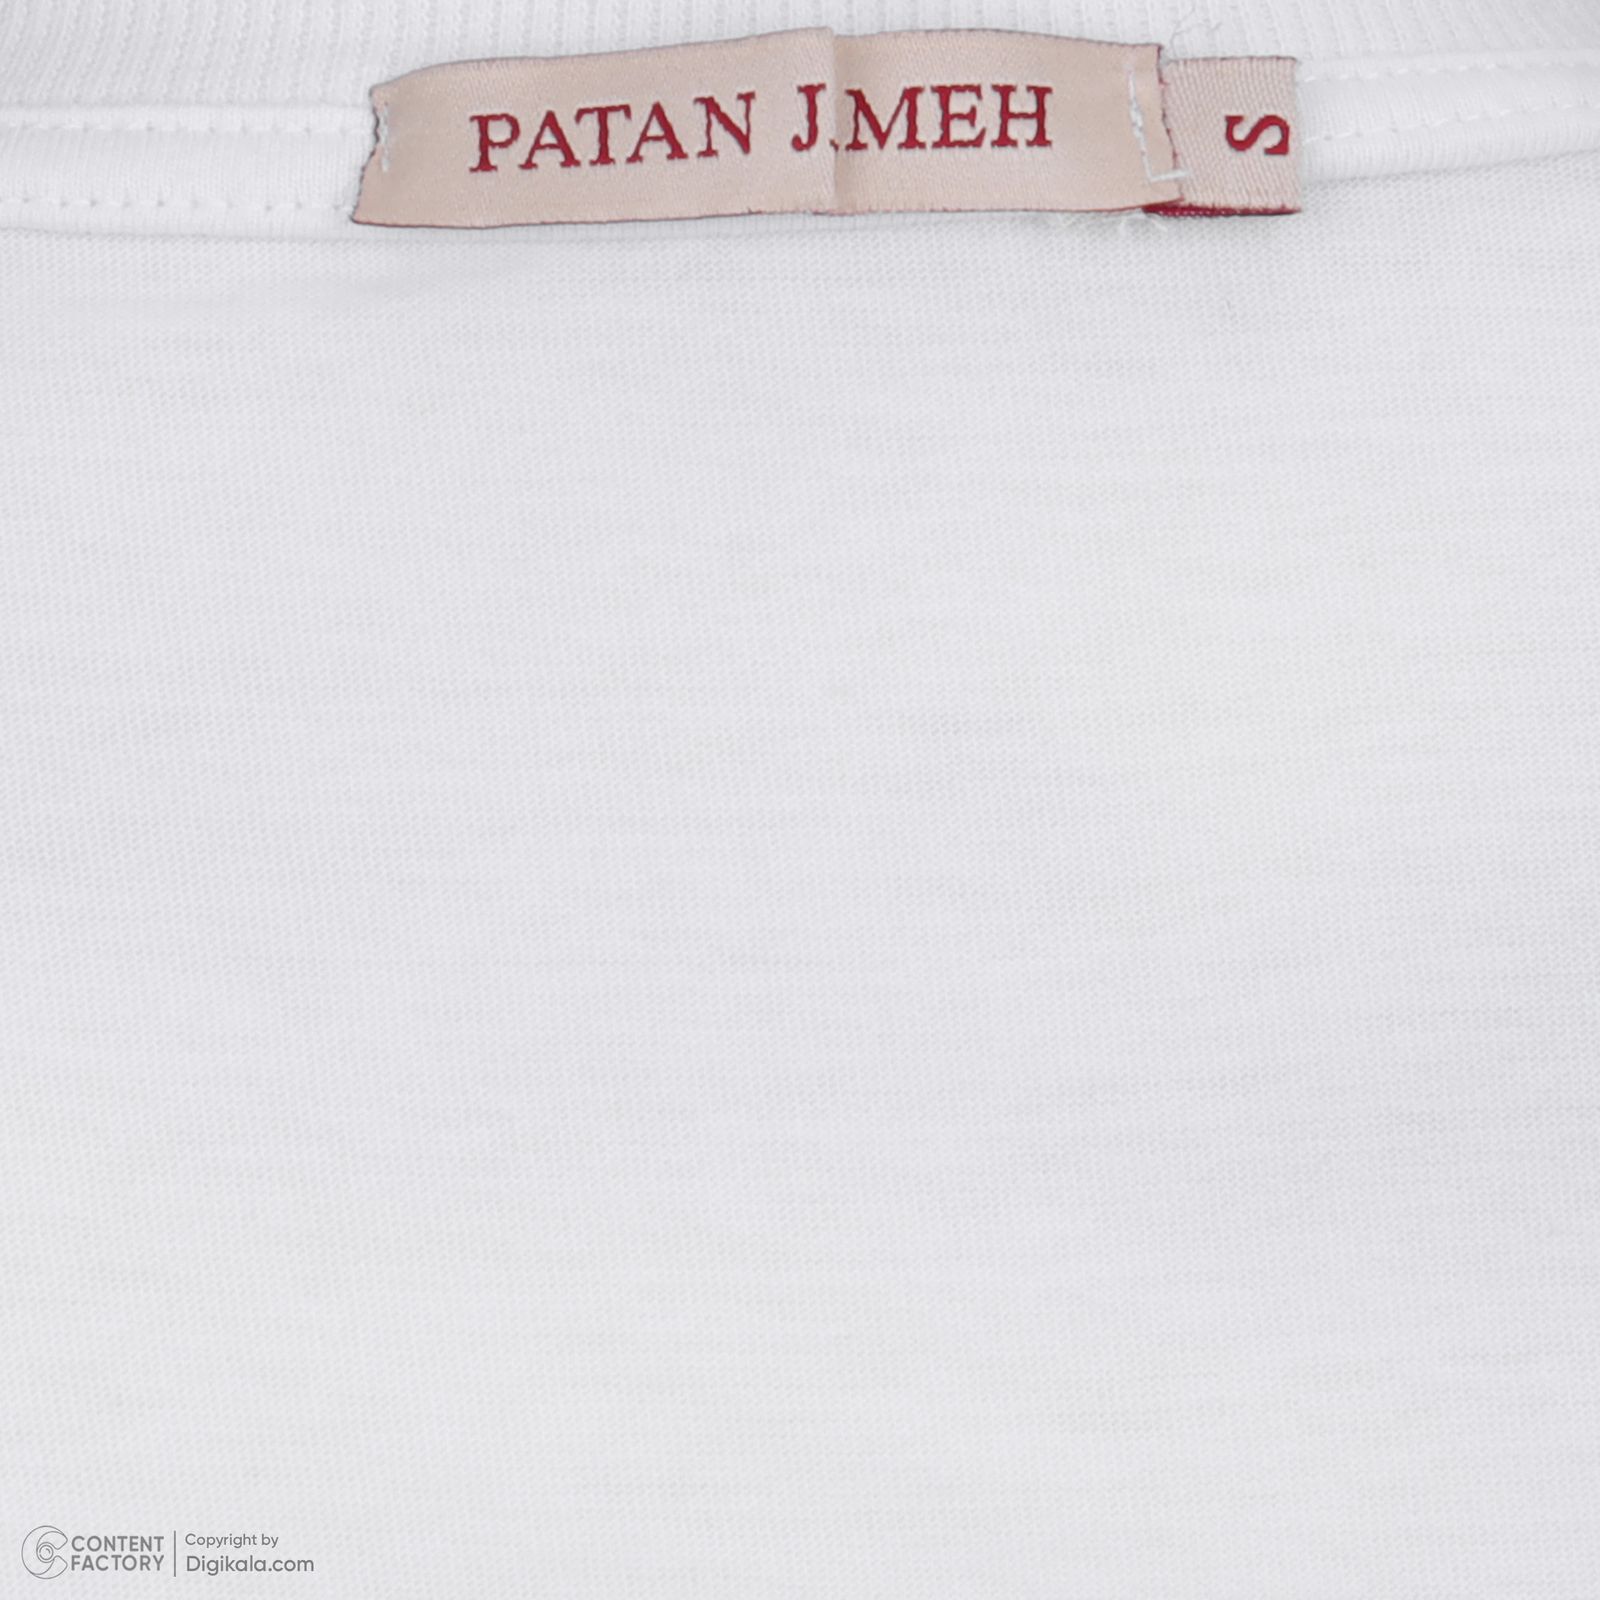 تی شرت آستین کوتاه زنانه پاتن جامه مدل  نخی 131631020297000 رنگ سفید -  - 6